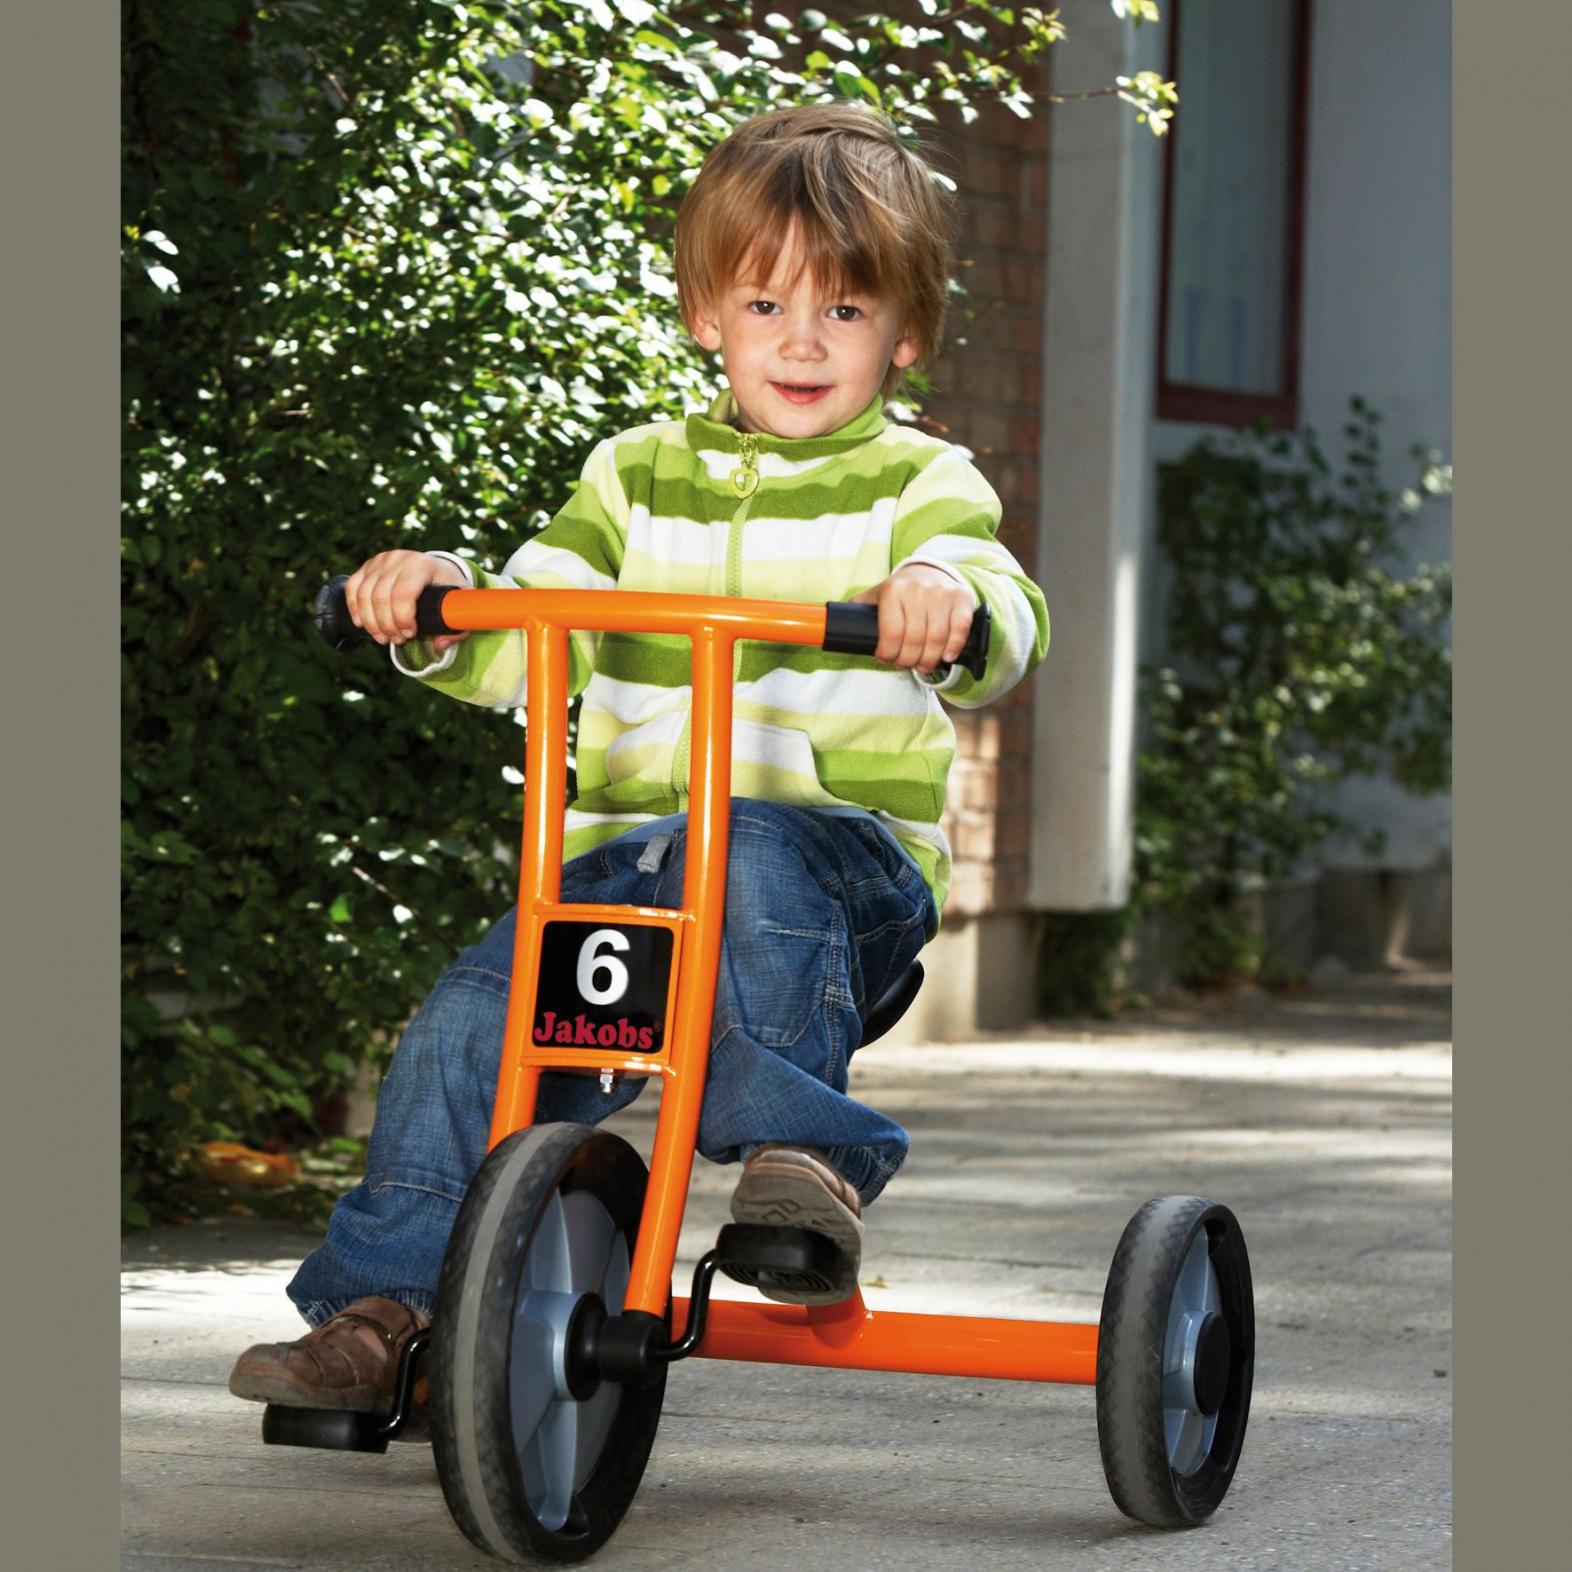 Dreirad klein - Jakobs - entspricht allen Sicherheitsanforderungen und Standards